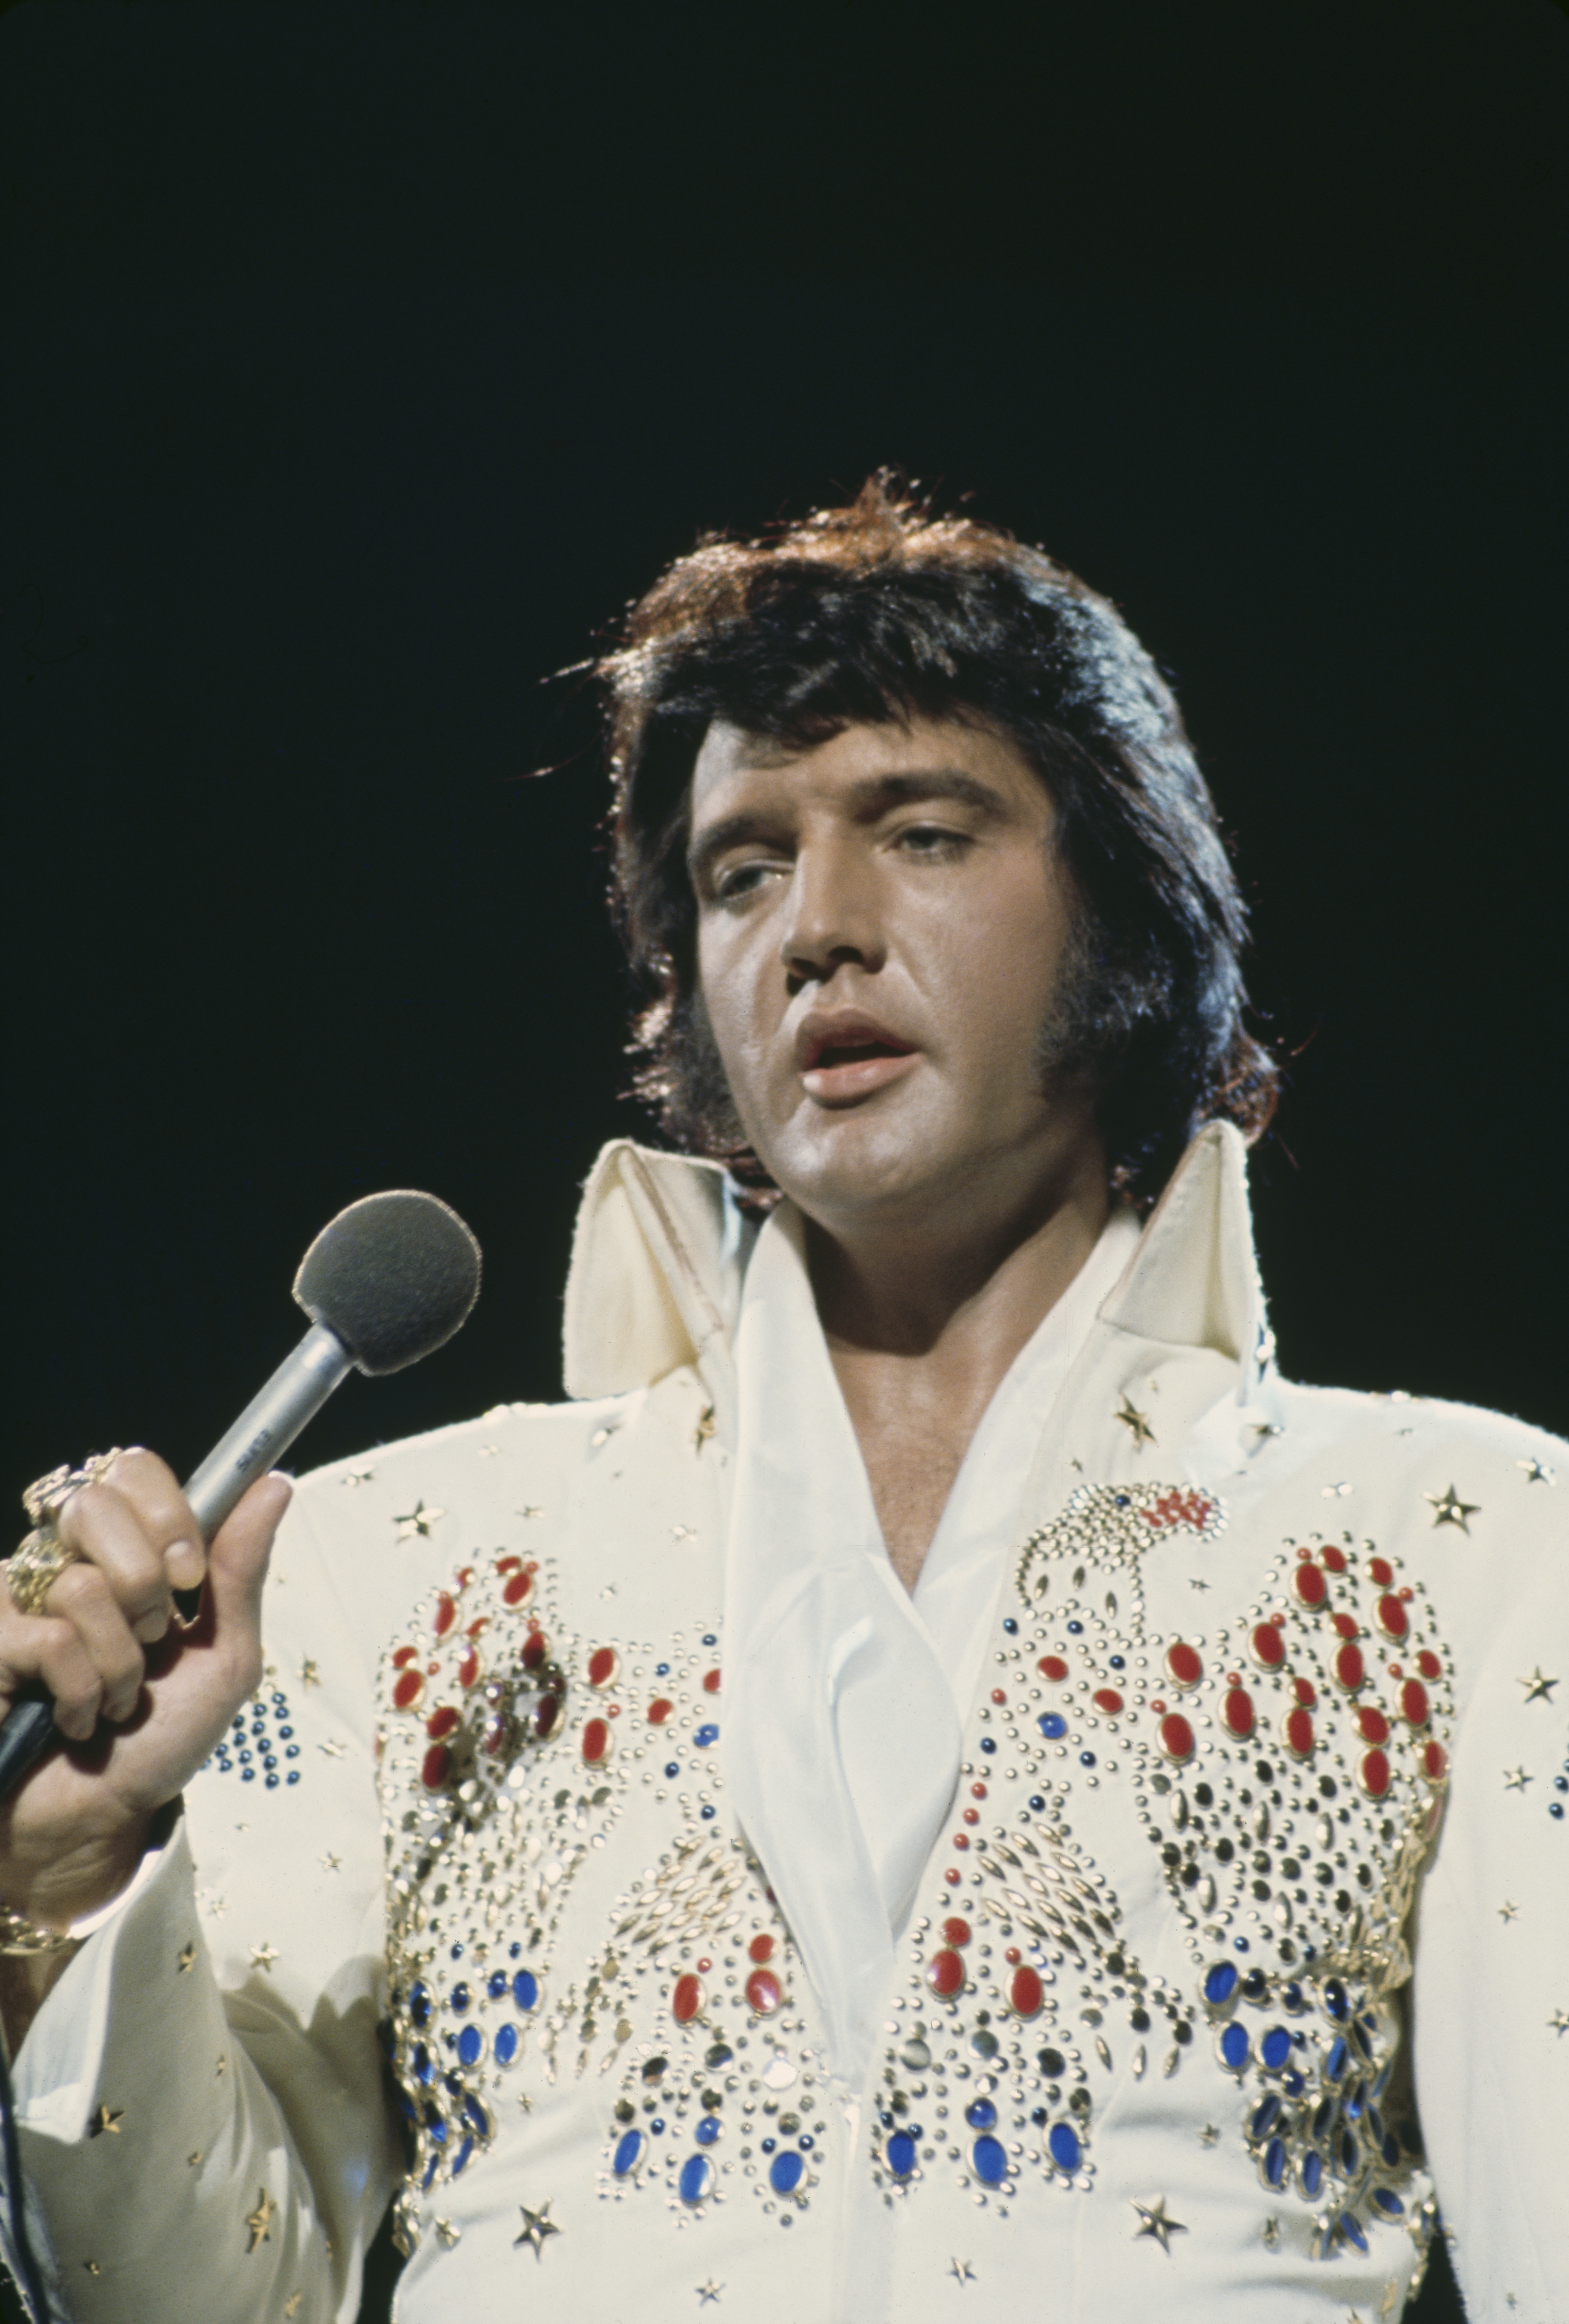 Elvis onstage